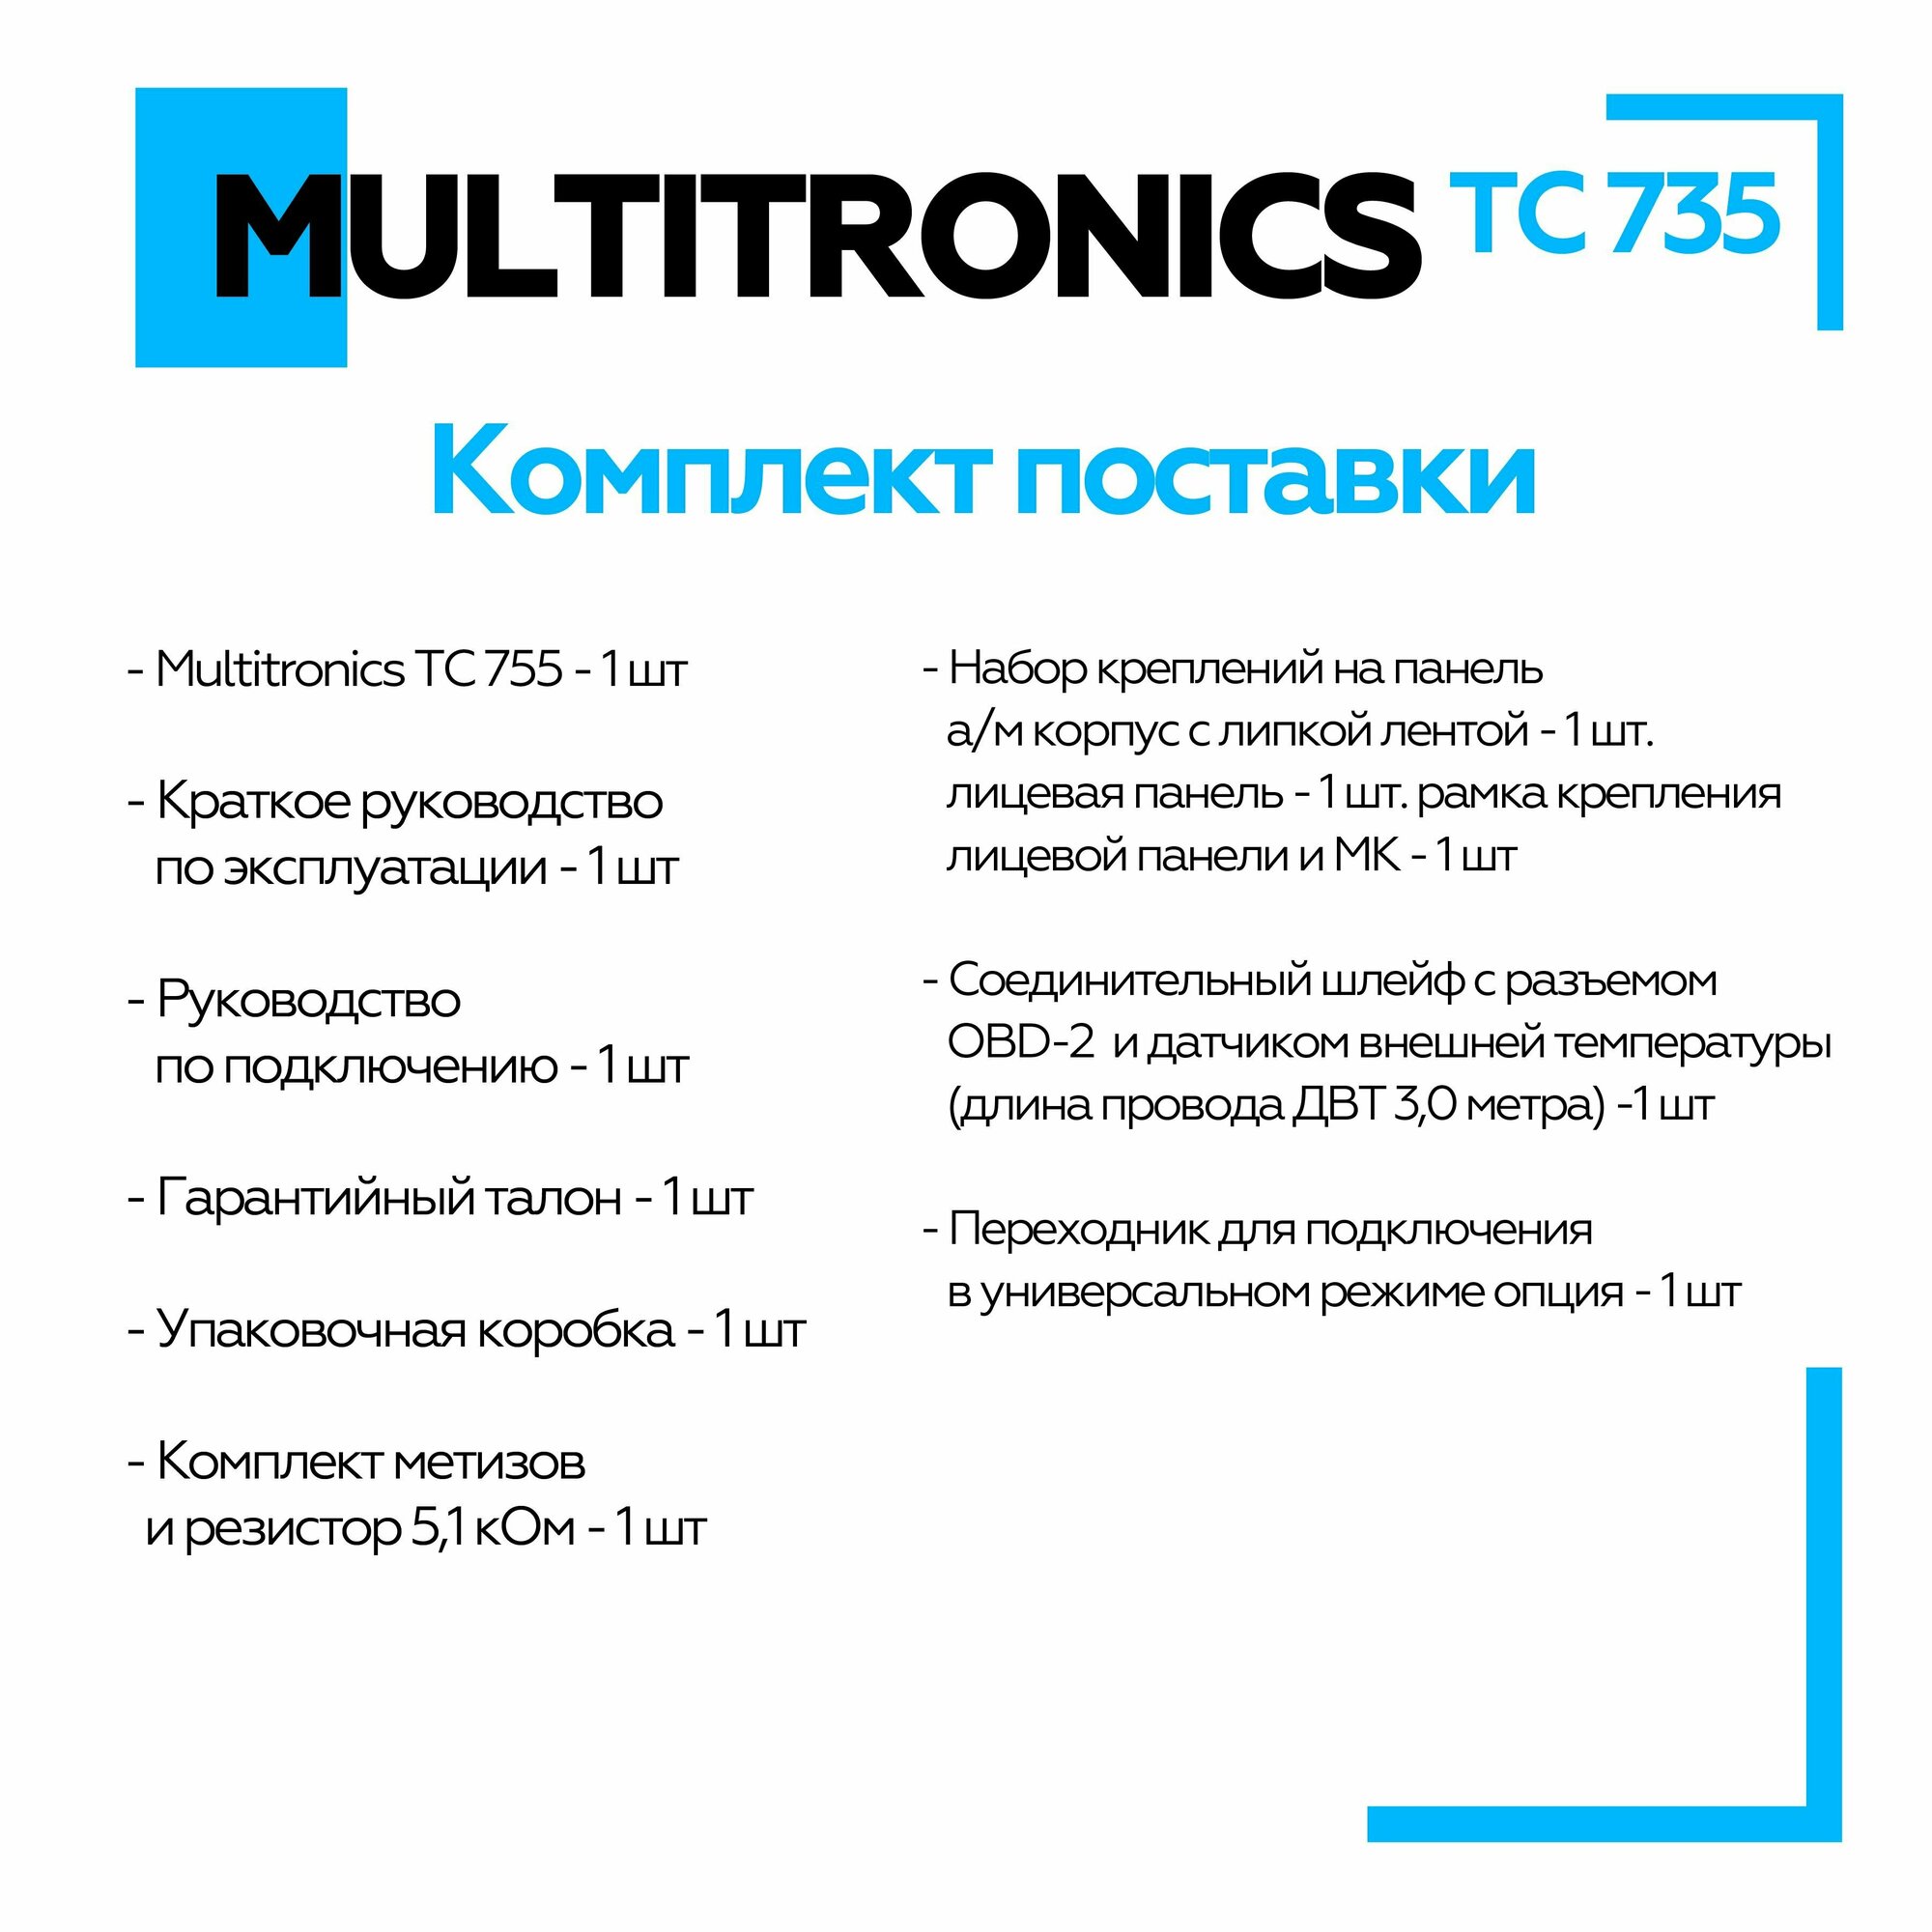 Бортовой компьютер Multitronics TC 735 без голосового сопровождения